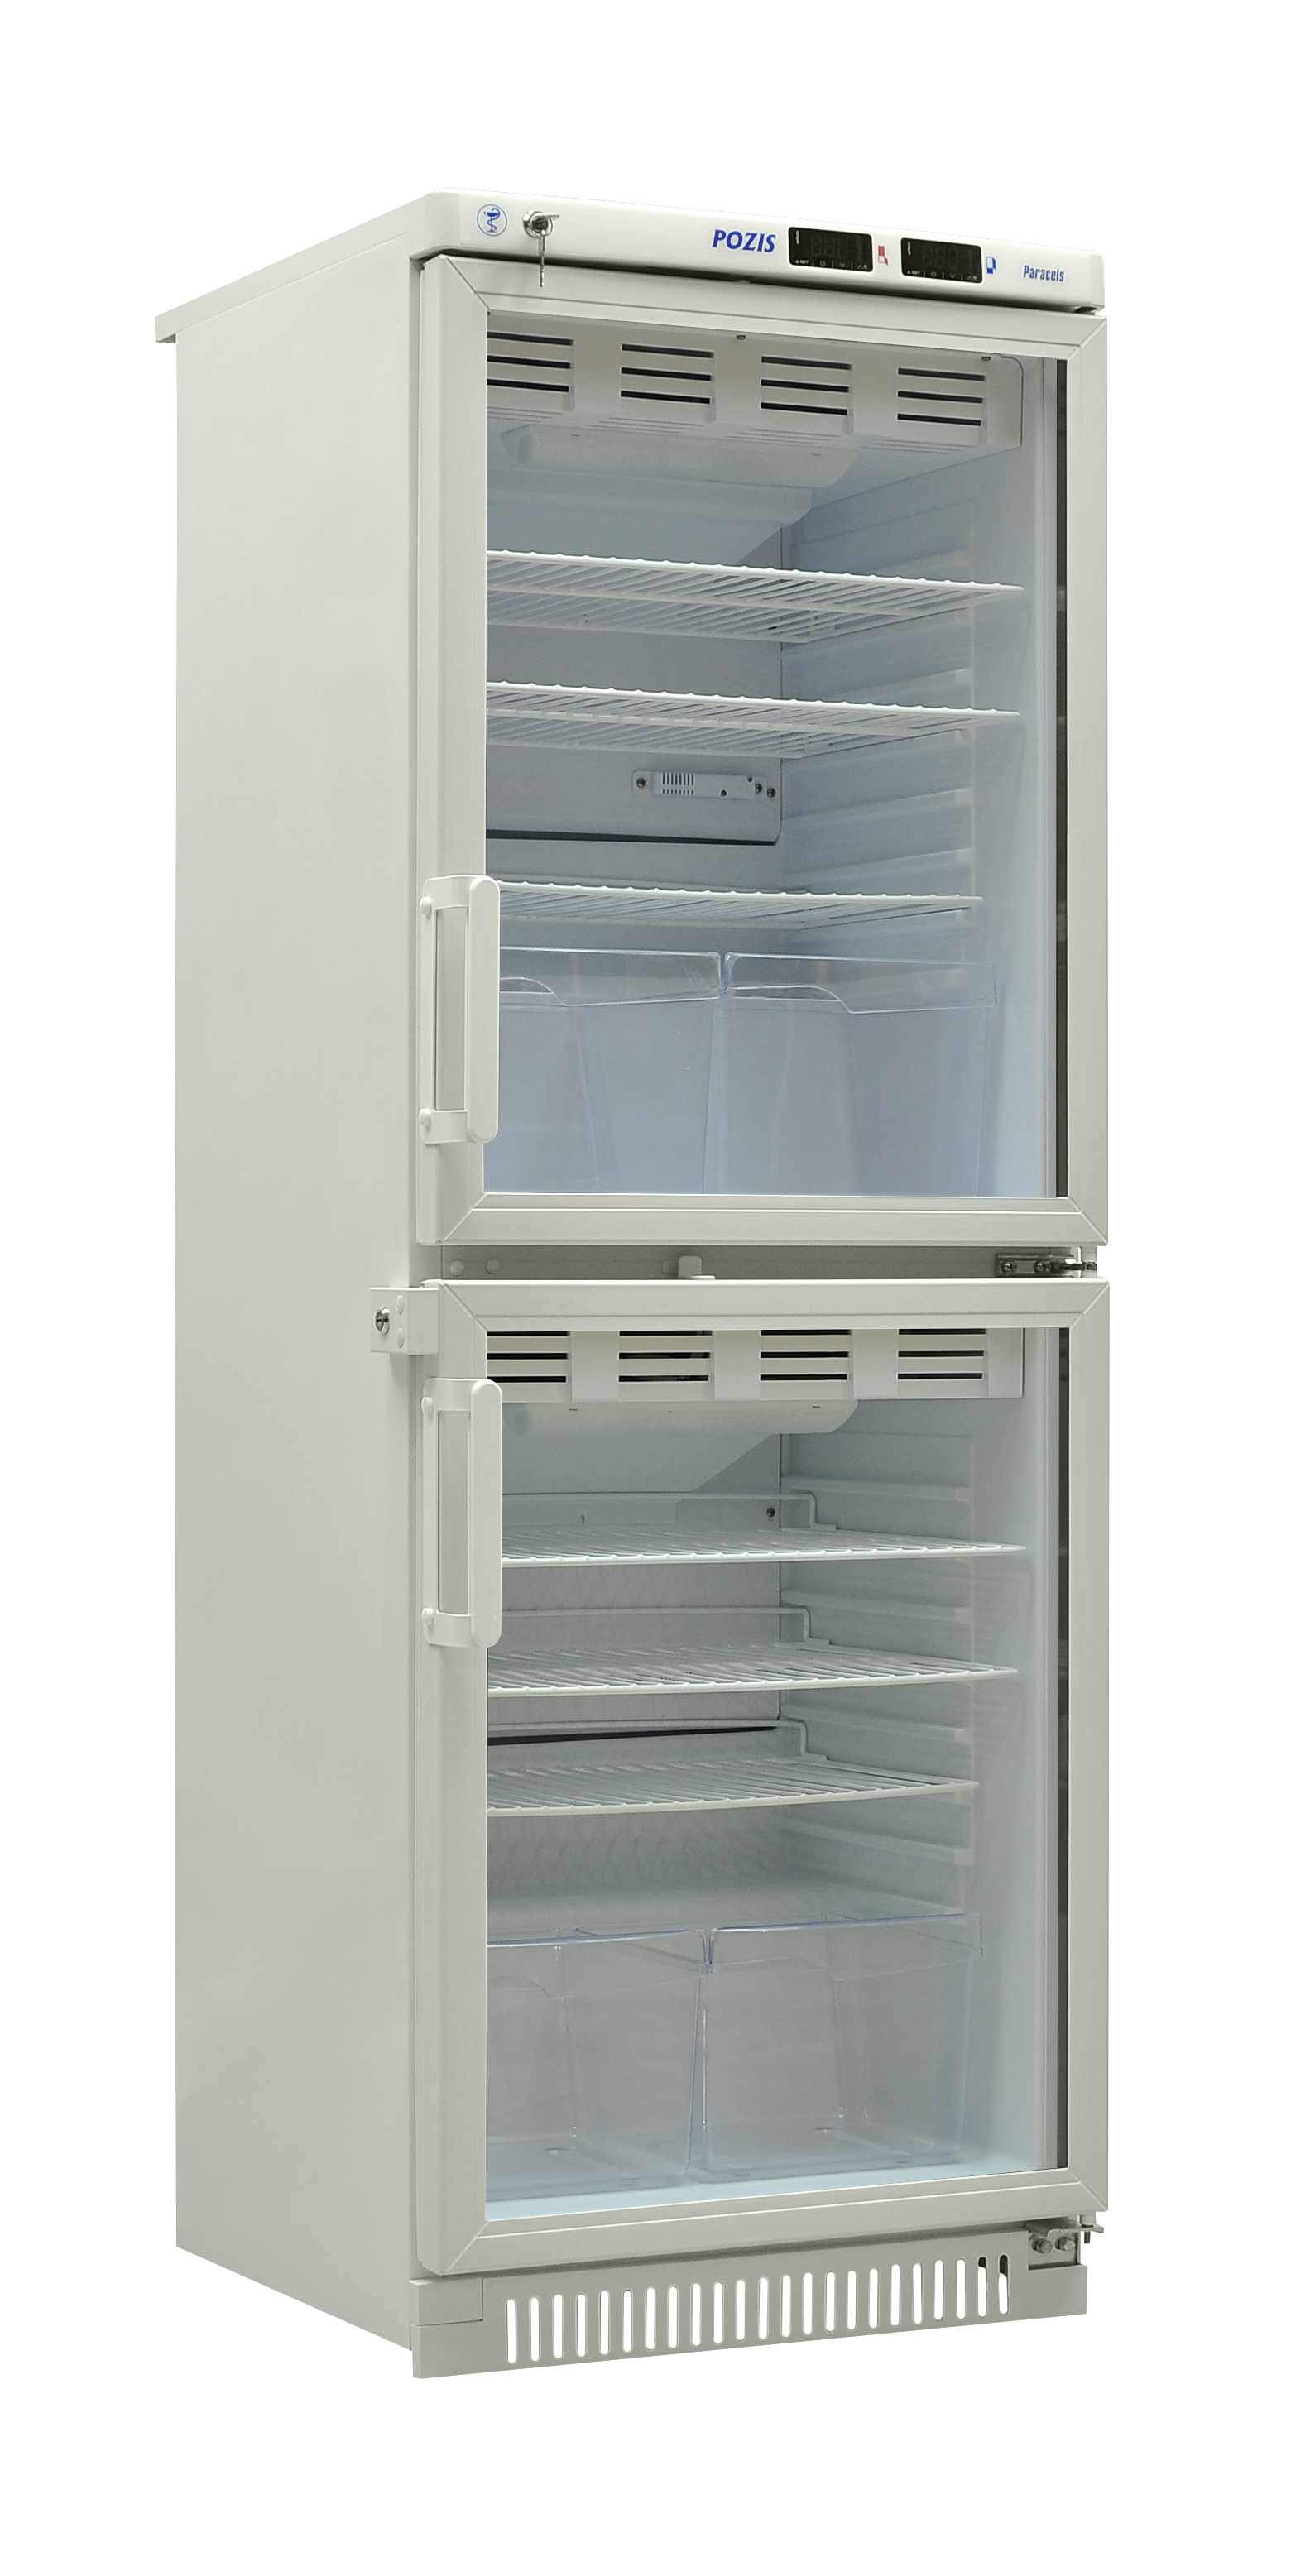 Холодильник фармацевтический ХФД-280 POZIS белый, тонированное стекло